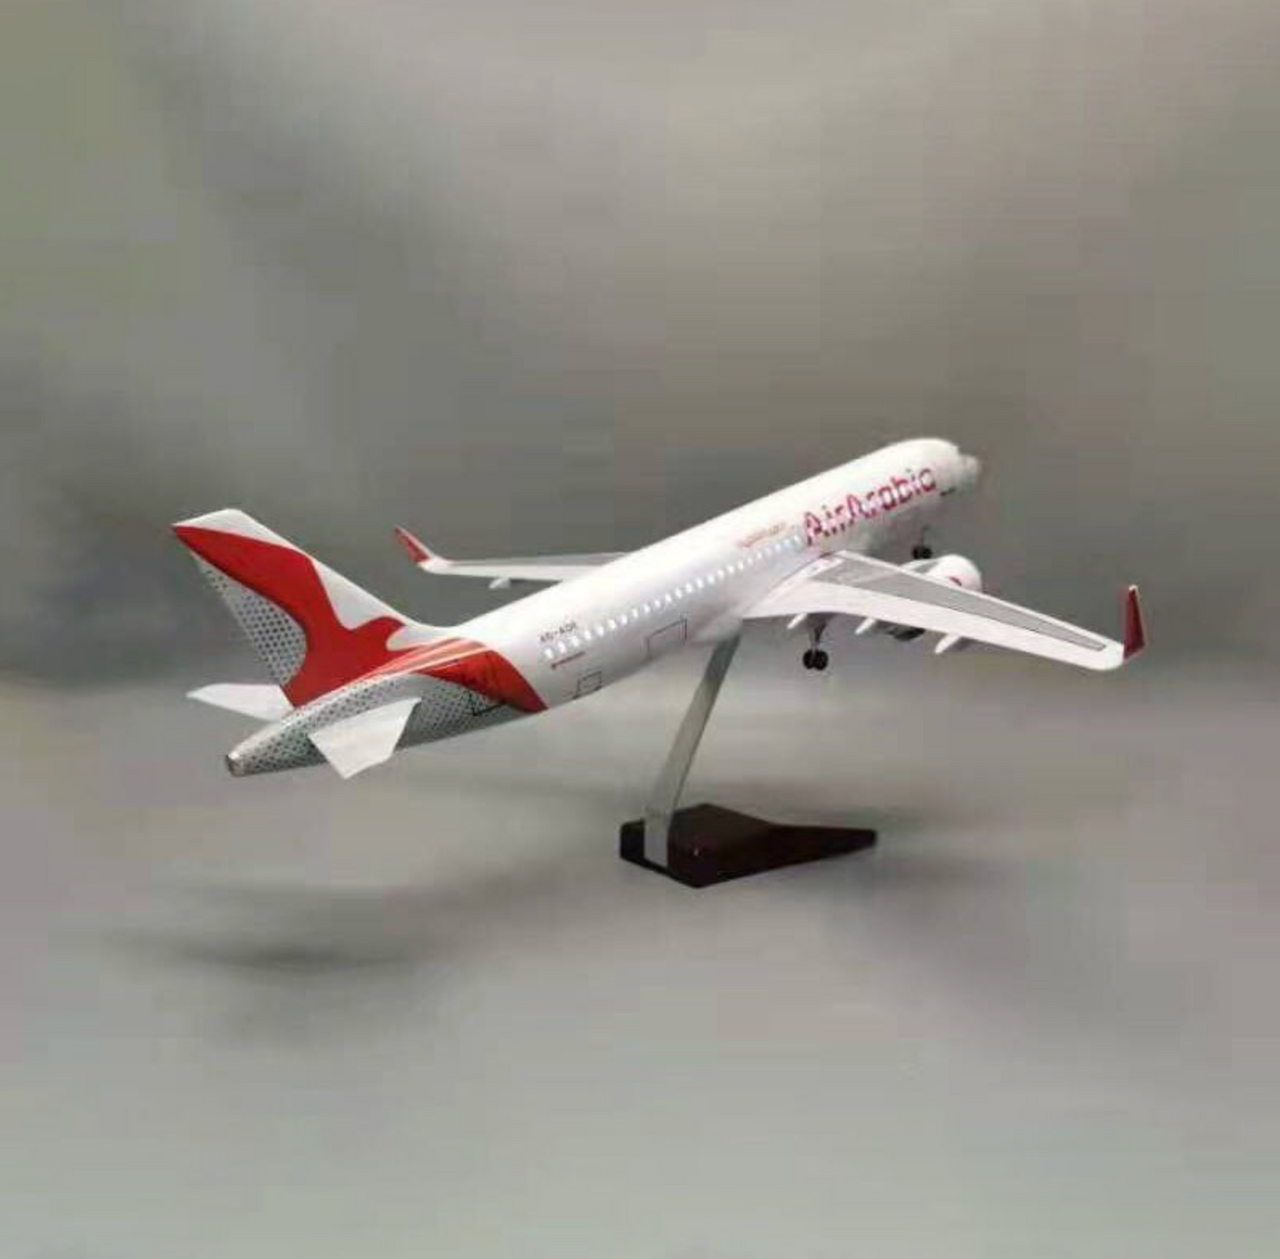 Air Arabia Airbus A320Neo Airplane Model (47CM)